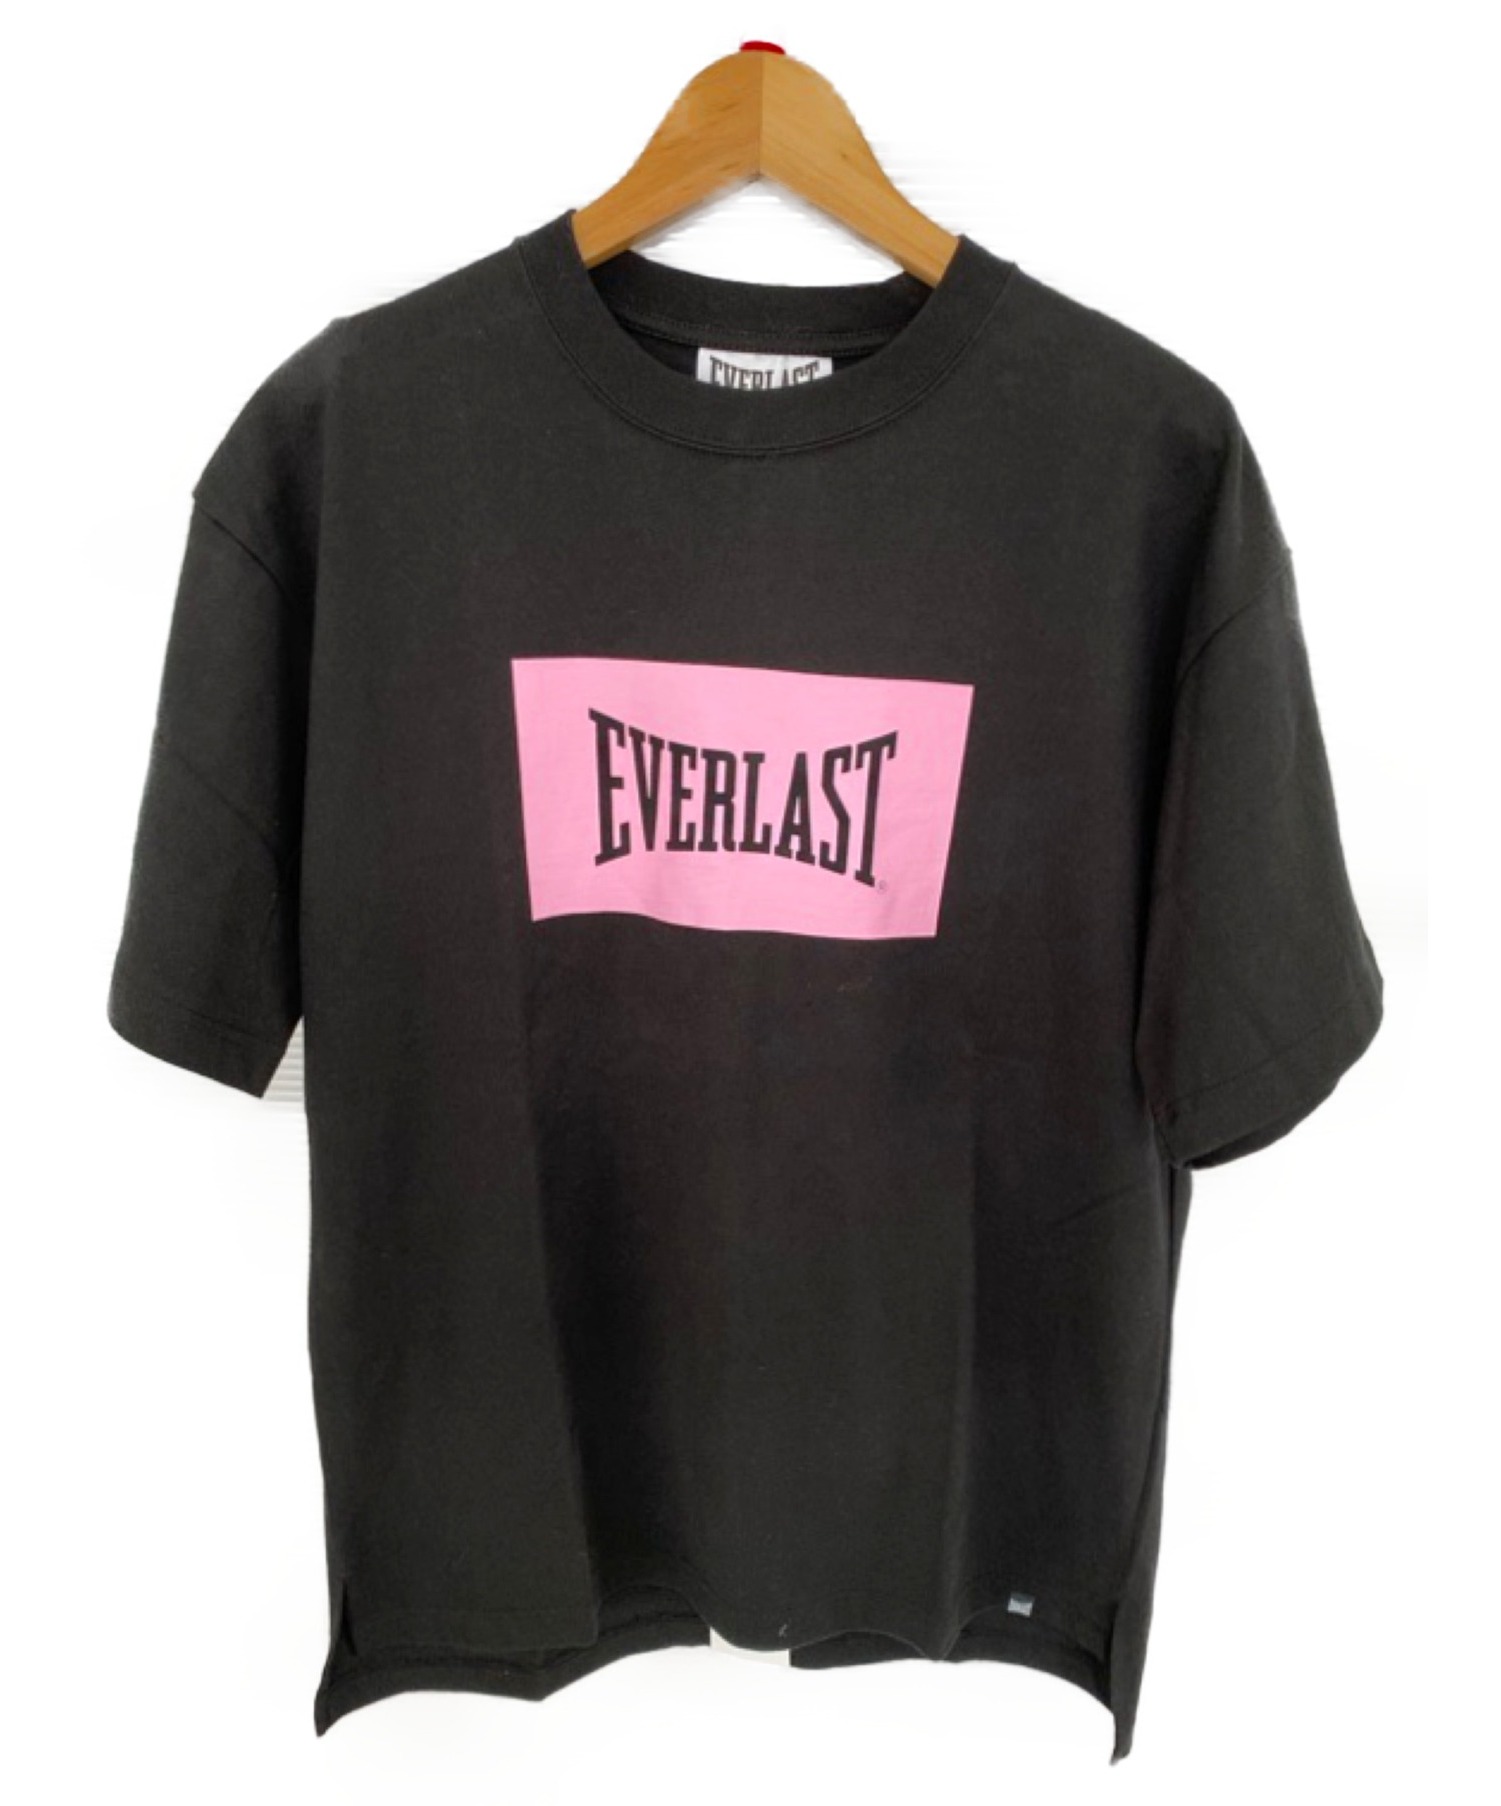 中古 古着通販 Everlast エバーラスト ボックスロゴtシャツ ブラック ピンク サイズ Mサイズ 未使用品 ブランド 古着通販 トレファク公式 Trefac Fashion